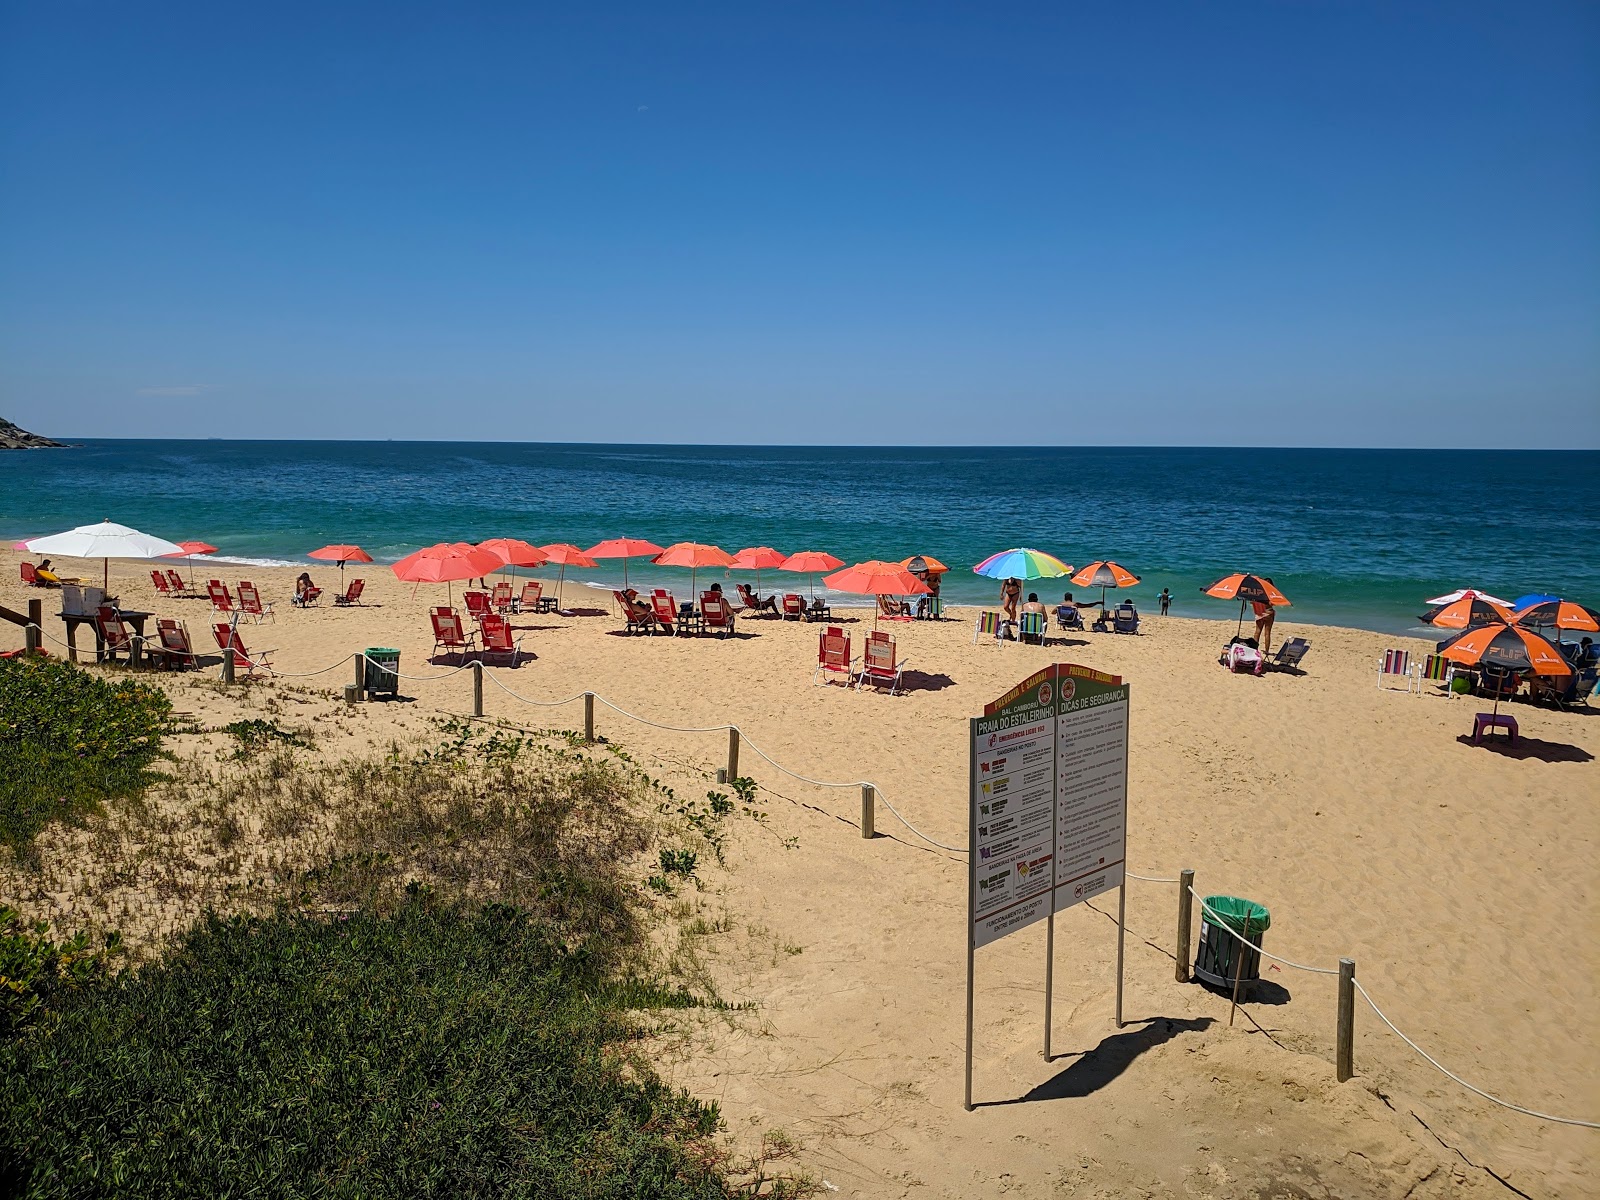 Foto af Praia do Estaleirinho - populært sted blandt afslapningskendere